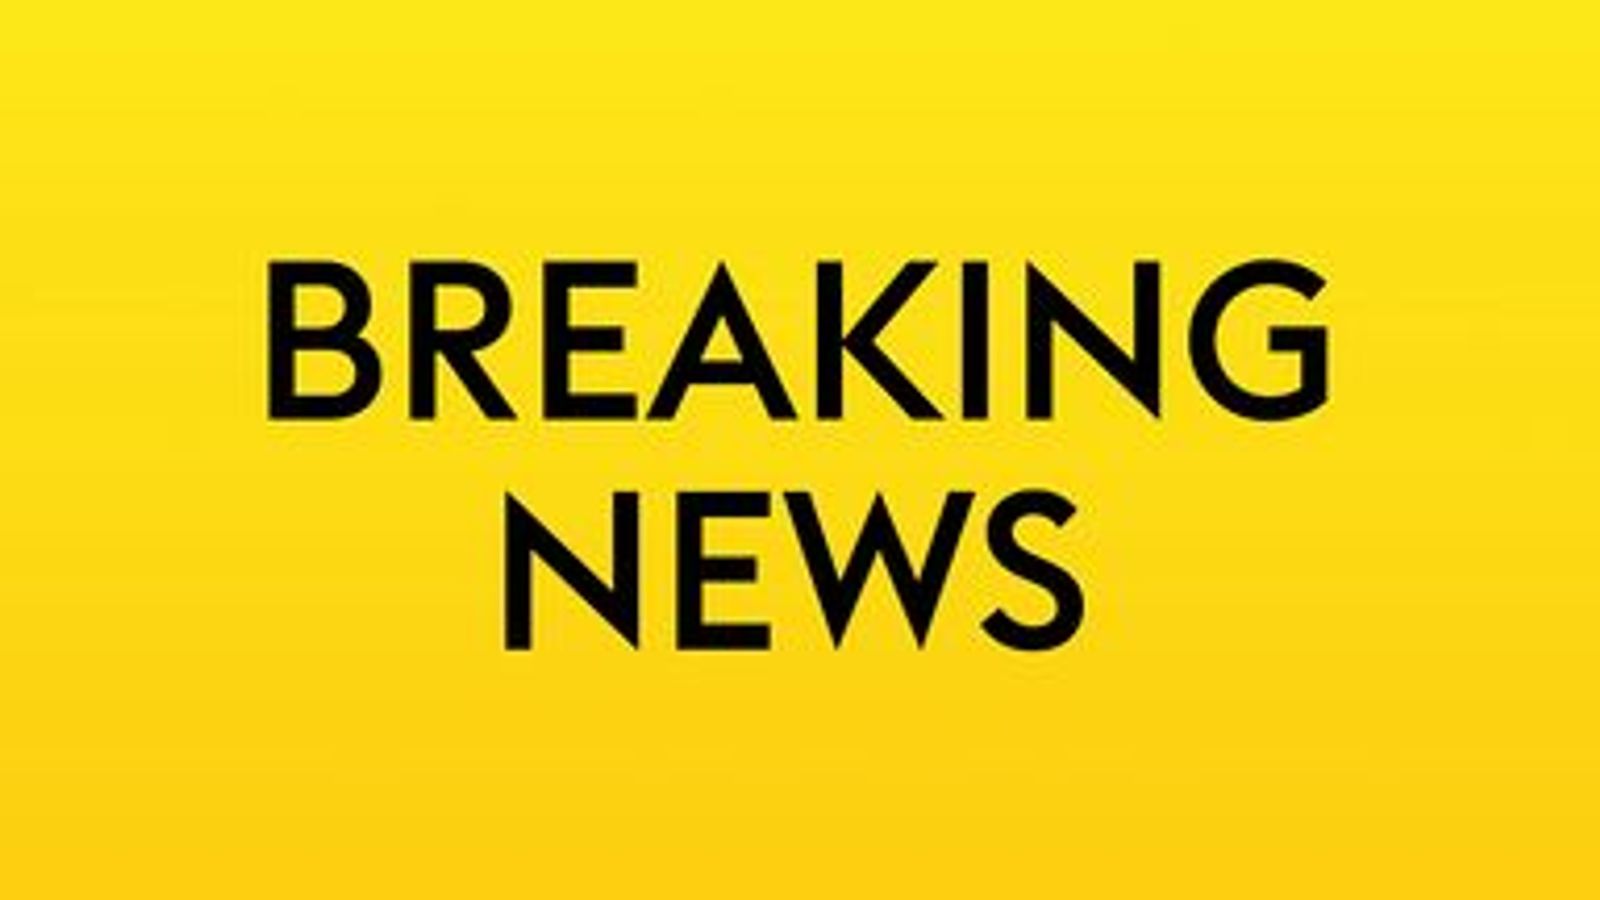 จู๊ด เบลลิงแฮม และลีวาย โคลวิล คาดว่าจะถอนตัวจากทีมชาติอังกฤษ ในรอบคัดเลือกยูโร 2024 พฤศจิกายน |  ข่าวฟุตบอล